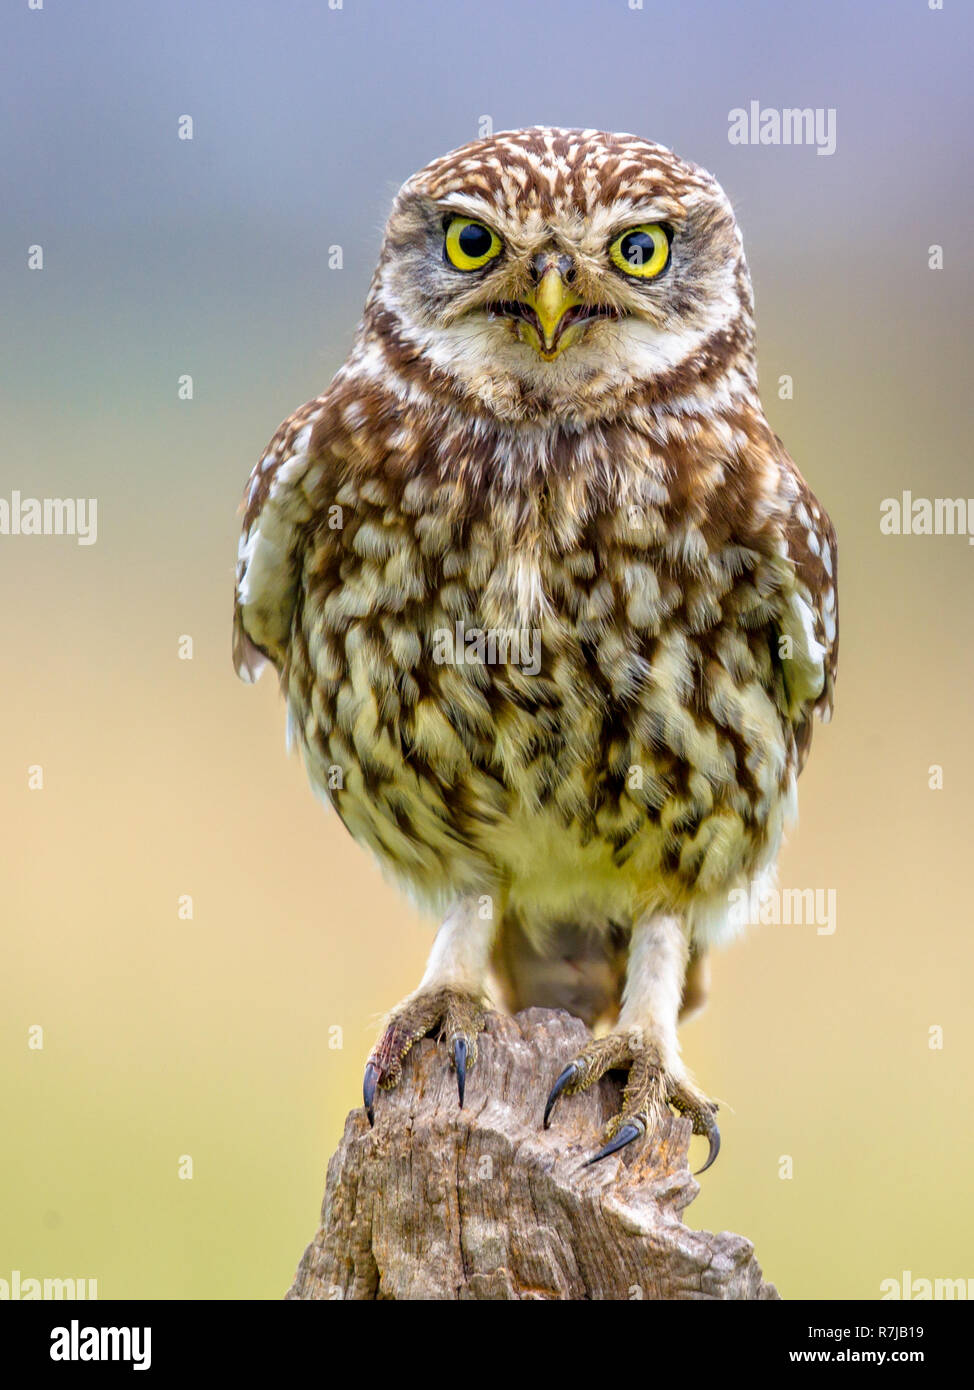 Civetta (Athene noctua) uccello notturno appollaiato sul registro con sfondo luminoso e guardando la fotocamera Foto Stock